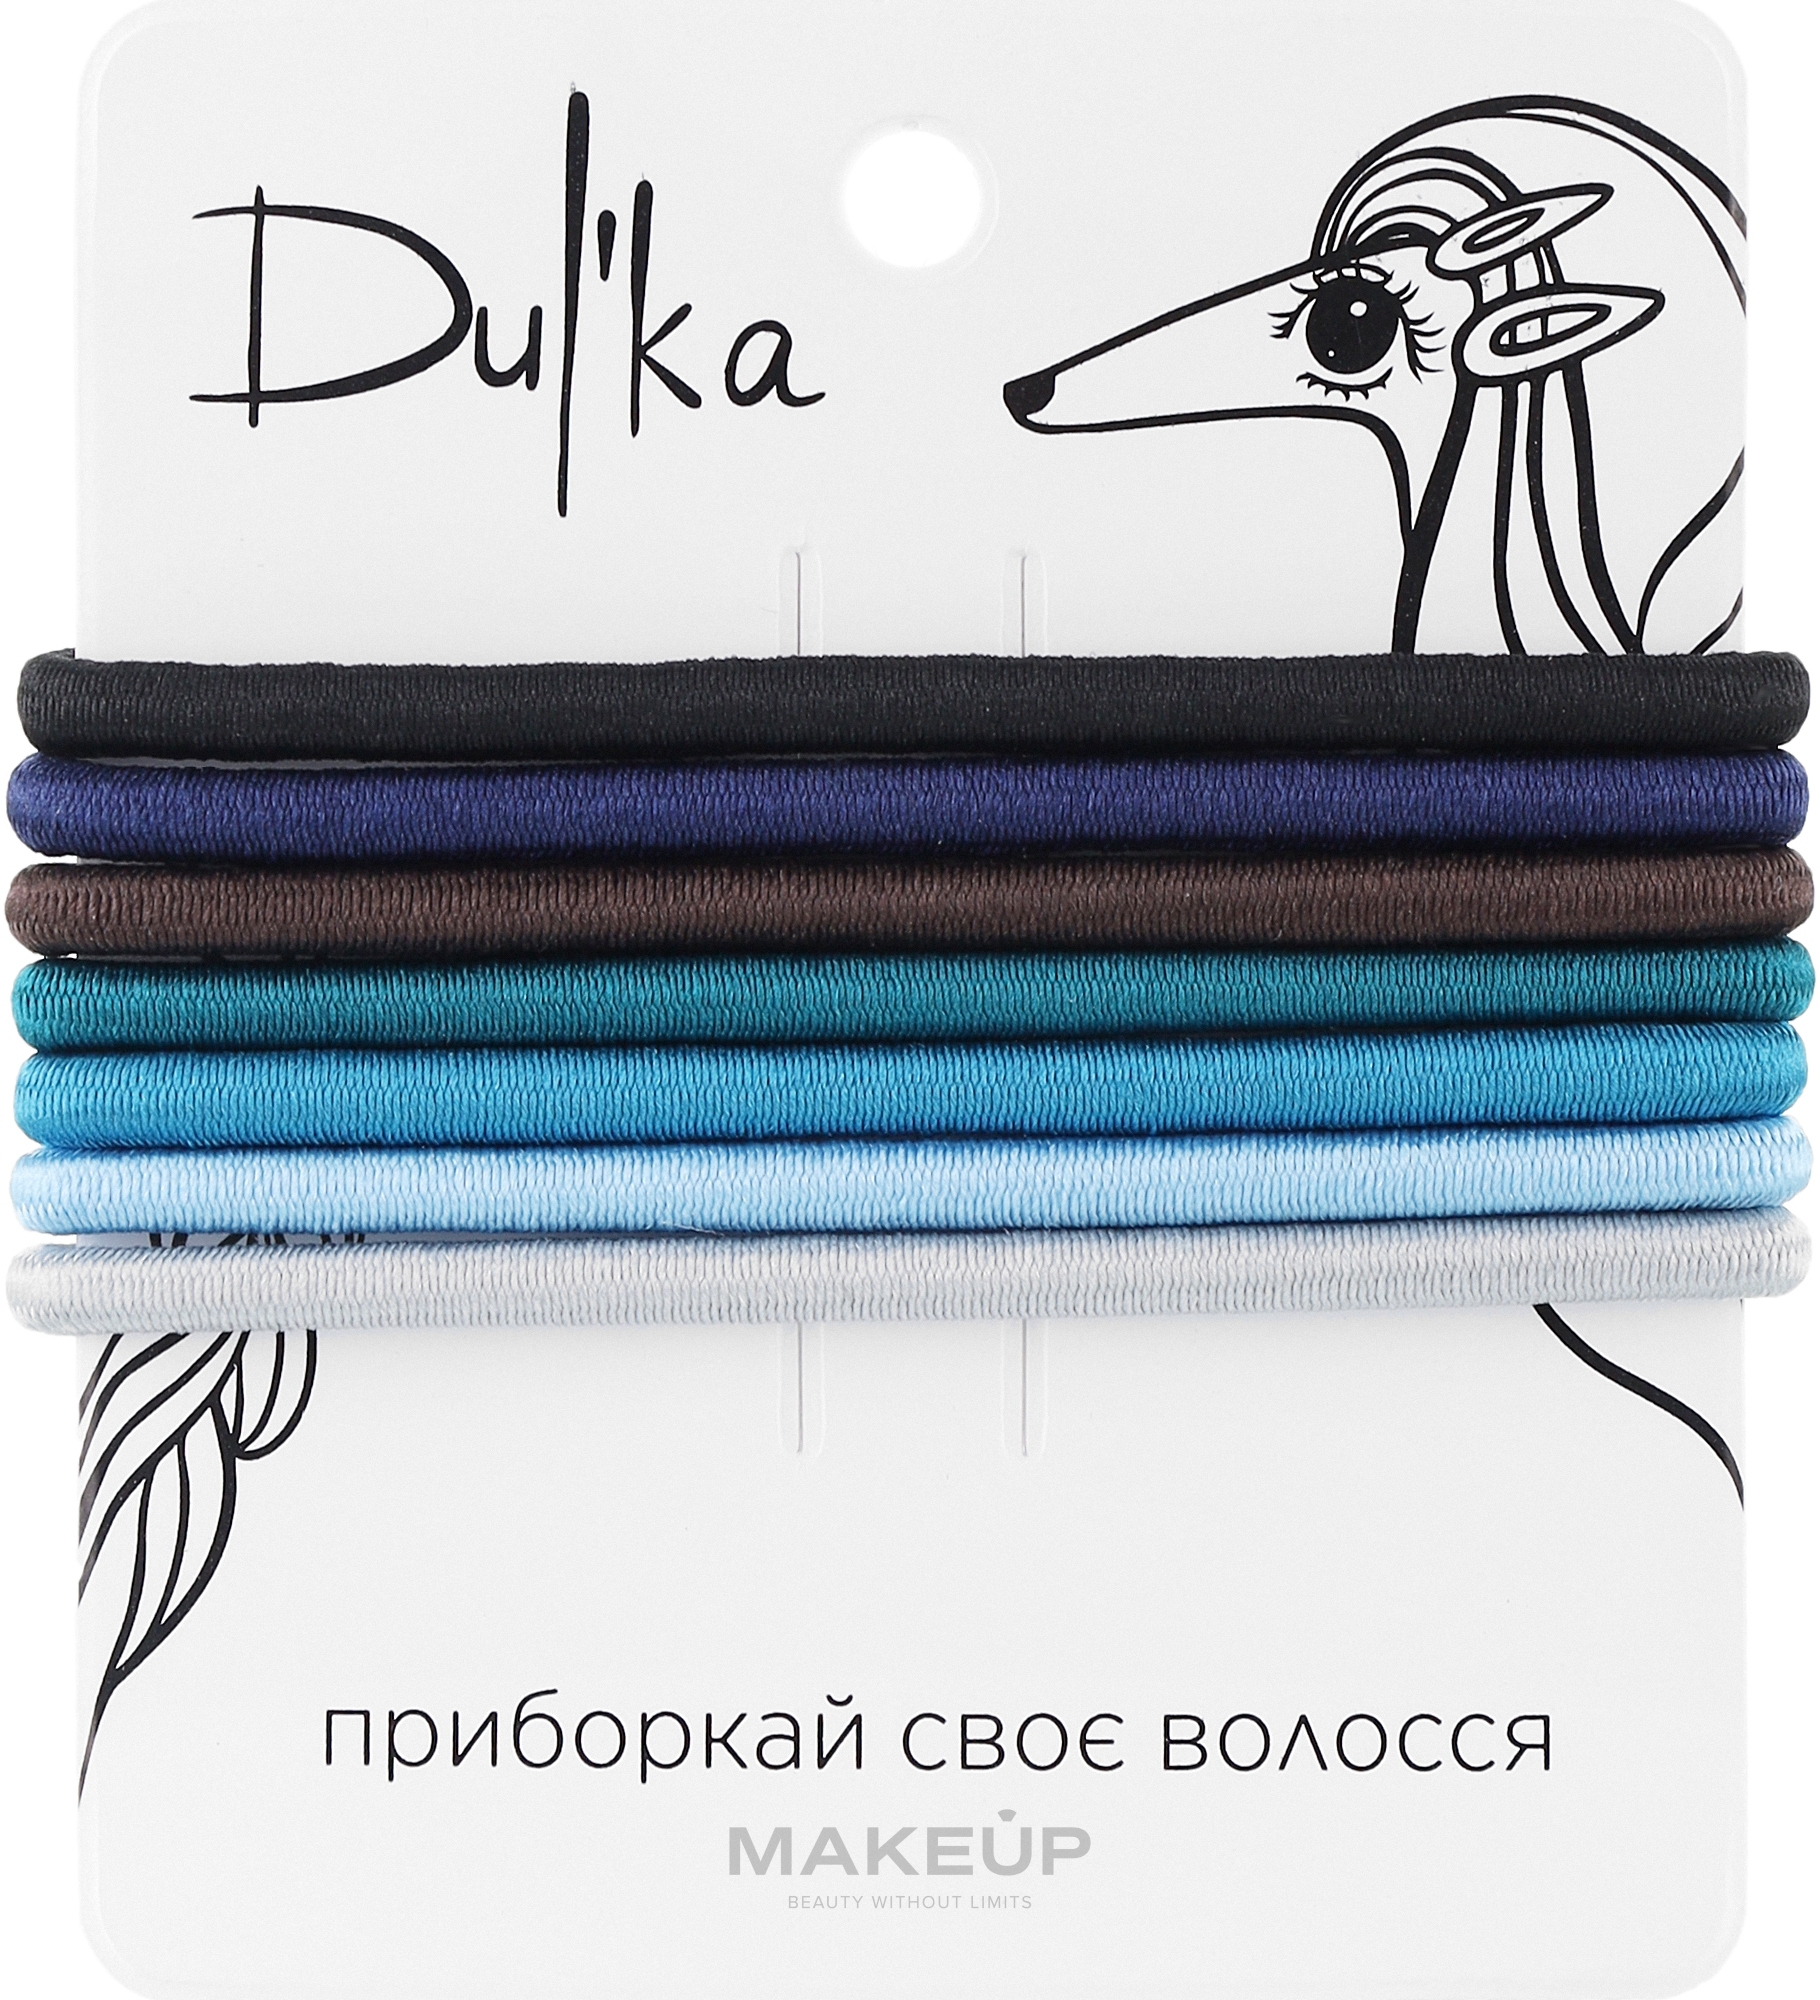 Набор разноцветных резинок для волос UH717705, 7 шт - Dulka  — фото 7шт